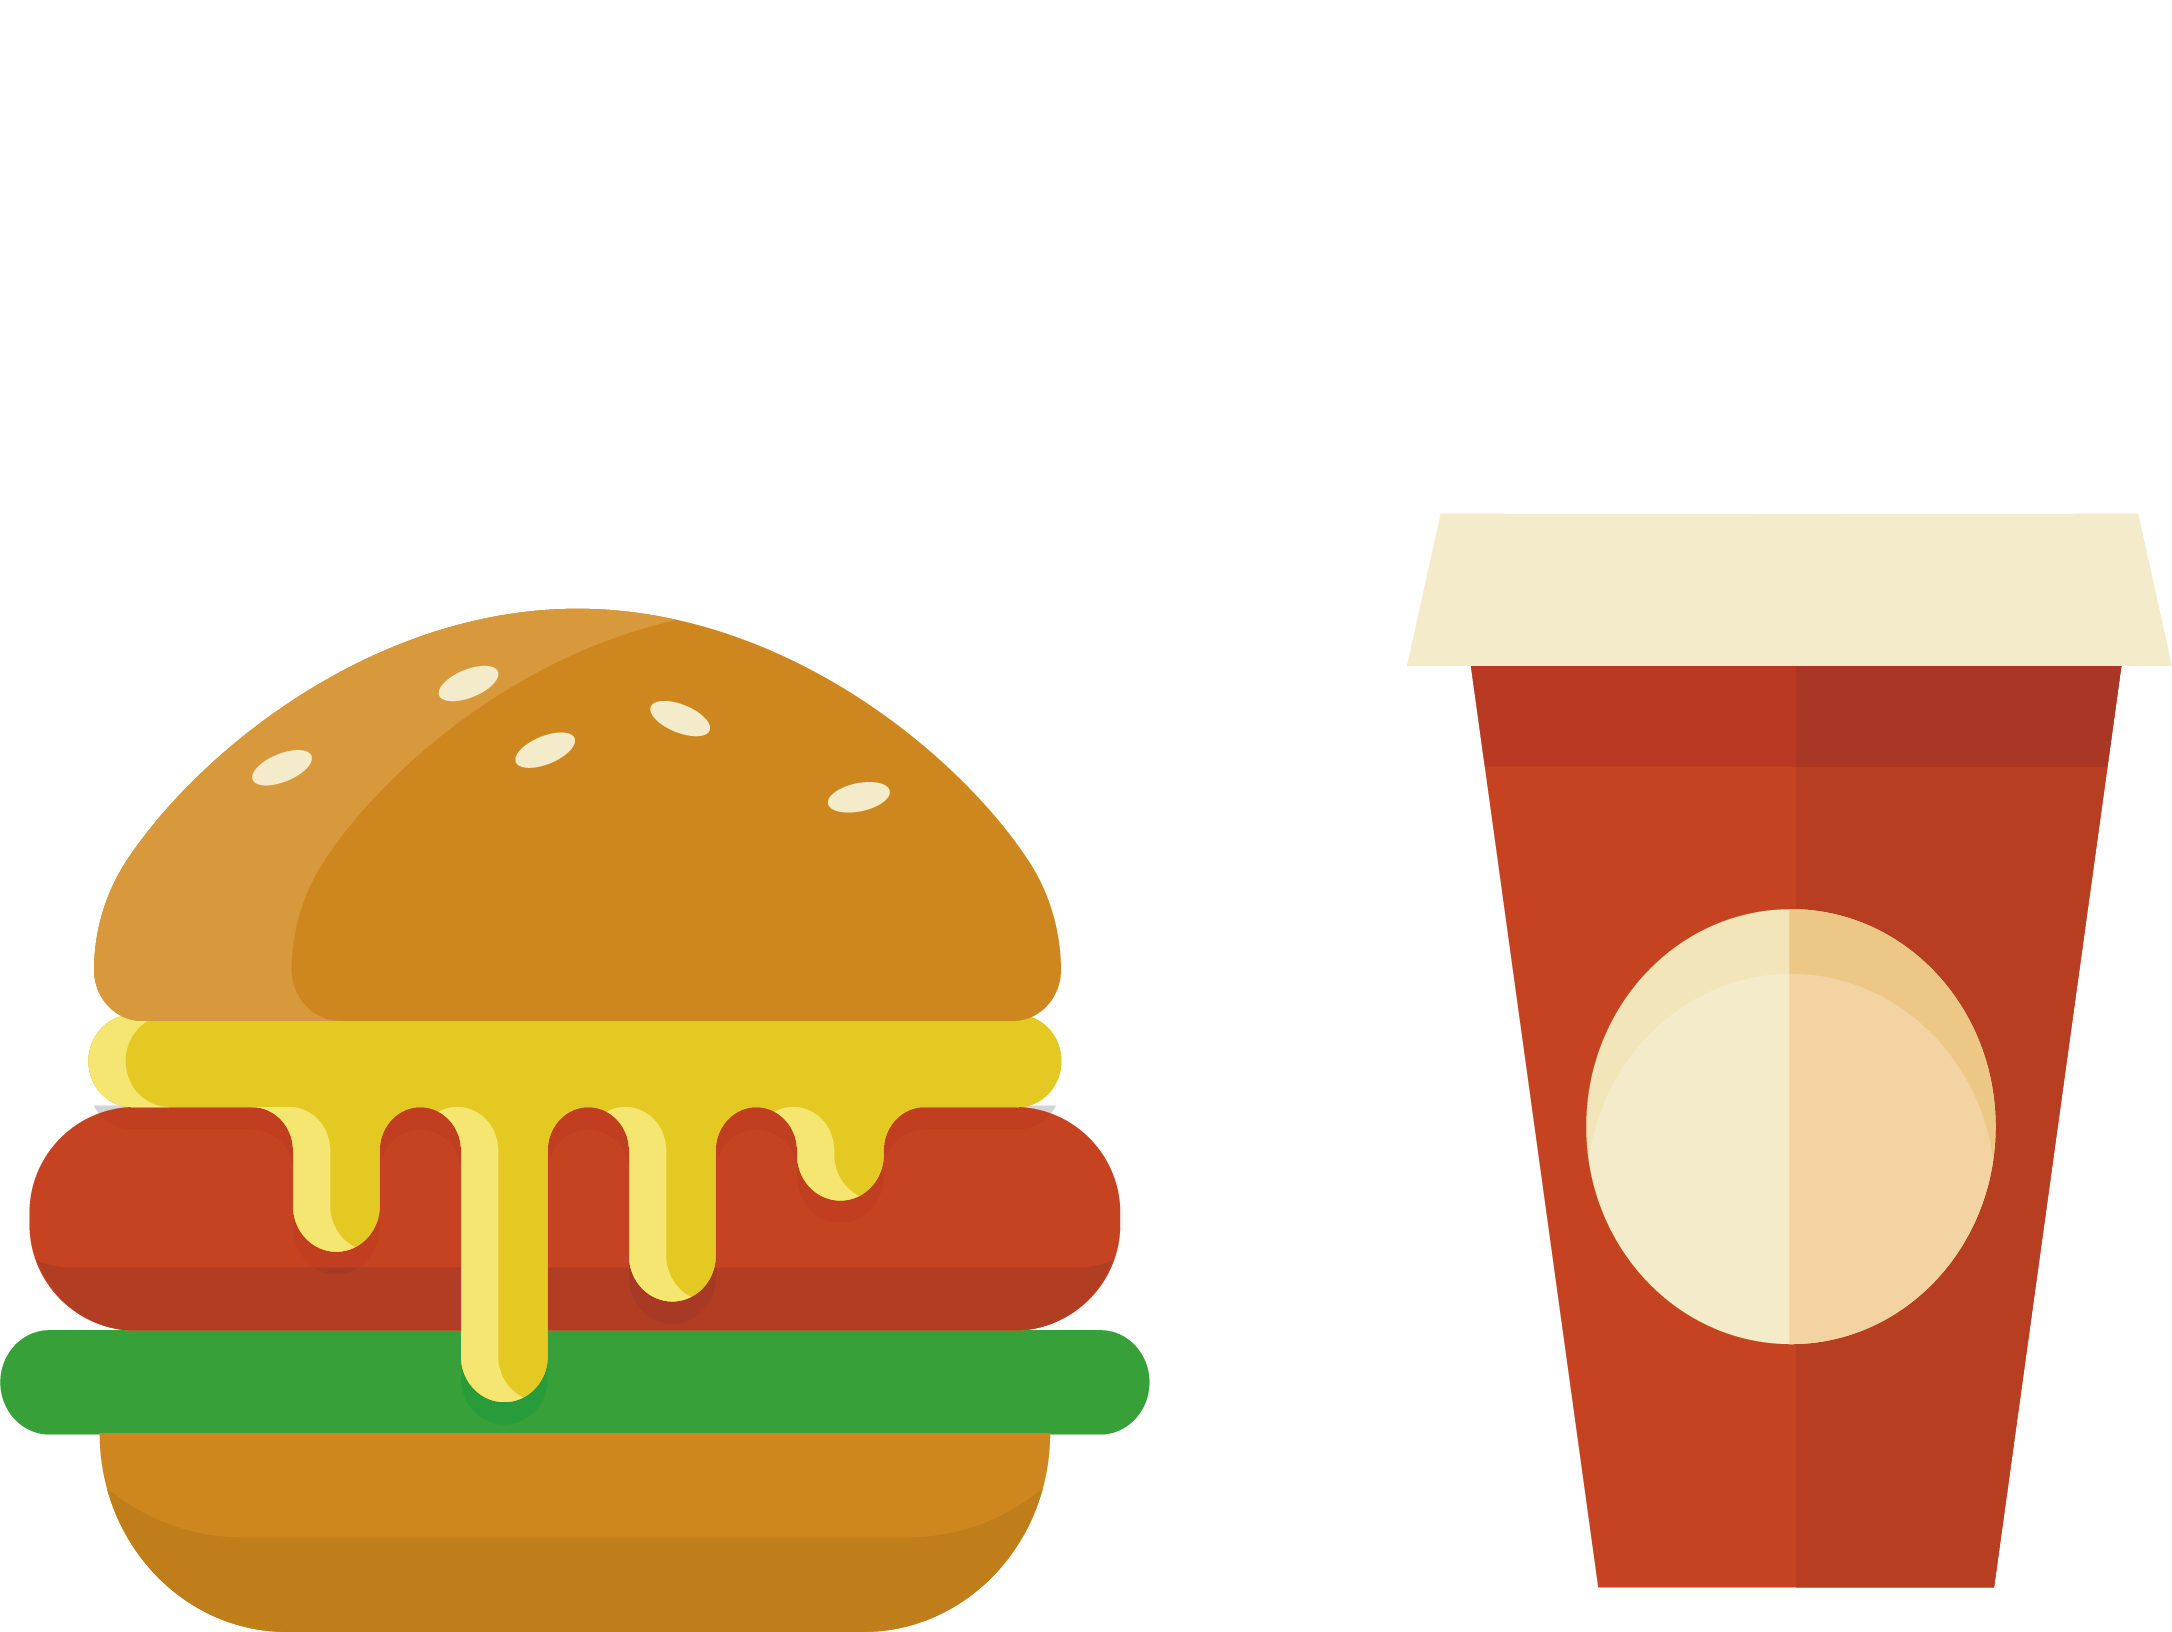 Hamburger Fast Food - Fast Food (2172x1632)